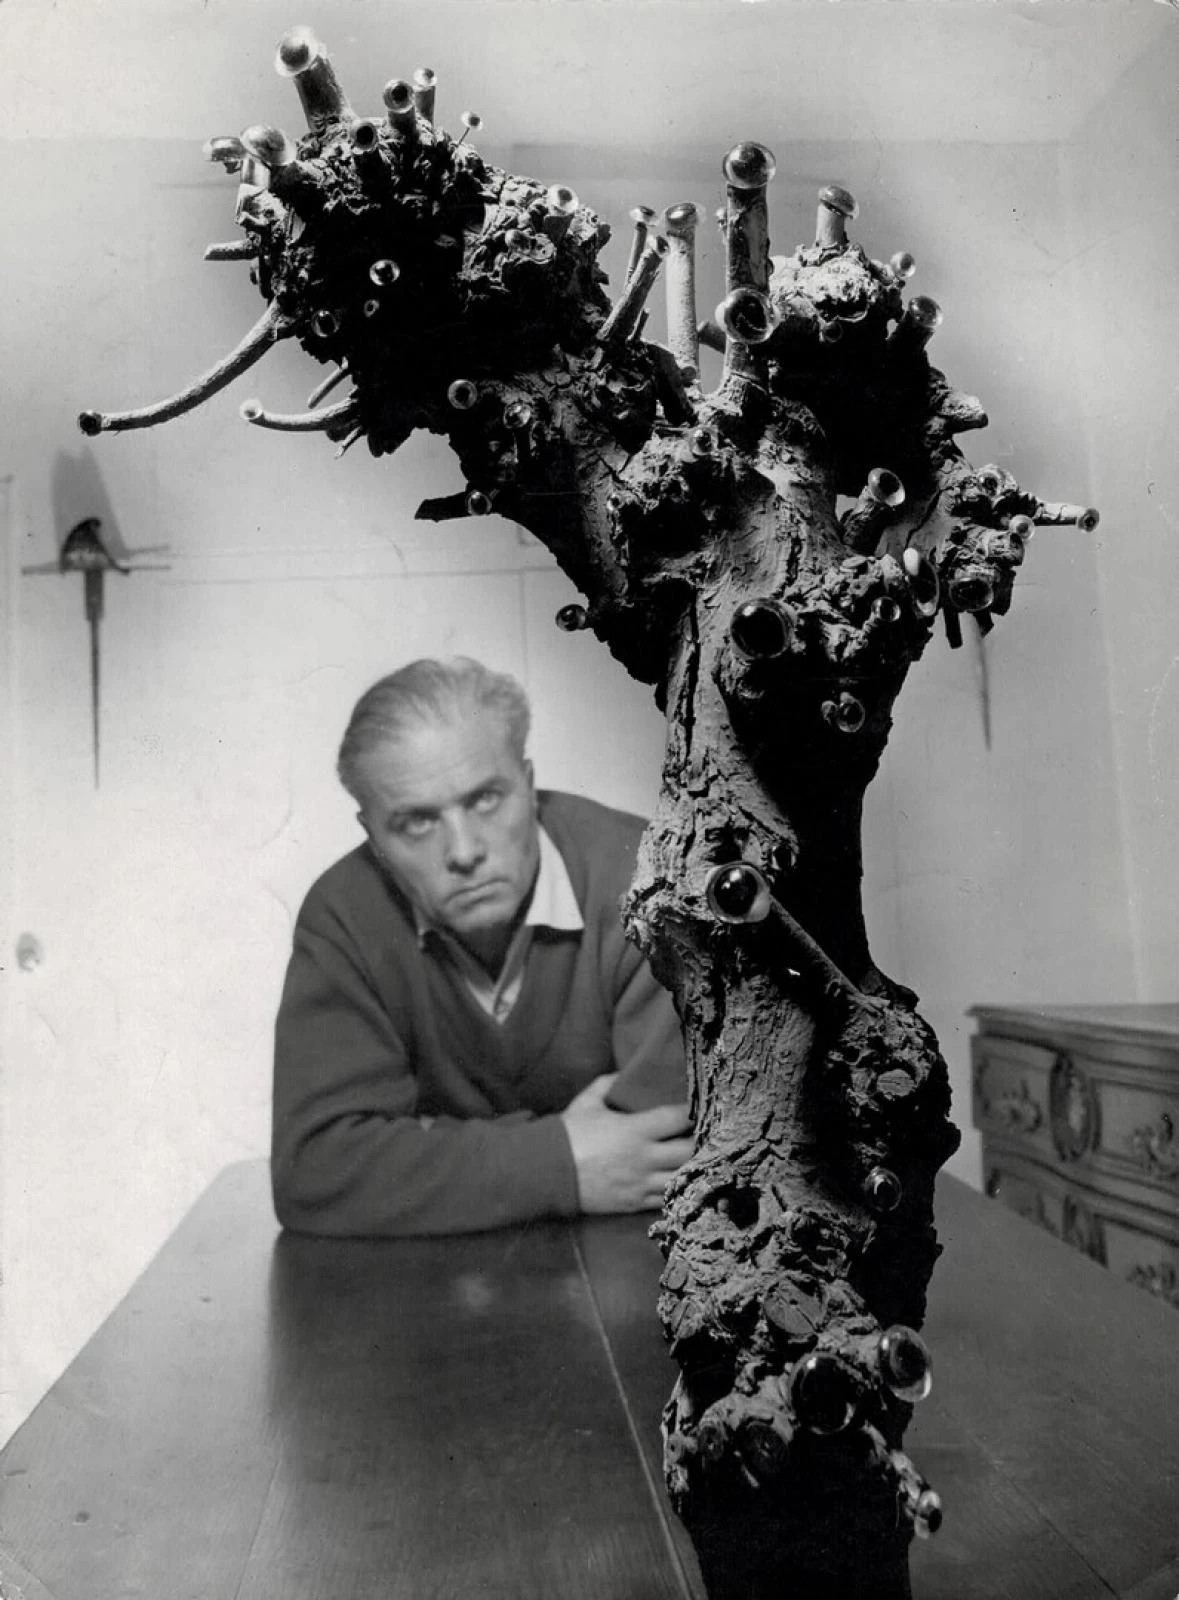 Robert Doisneau - Le poète Pierre Béarn et son arbre mystique aux yeux